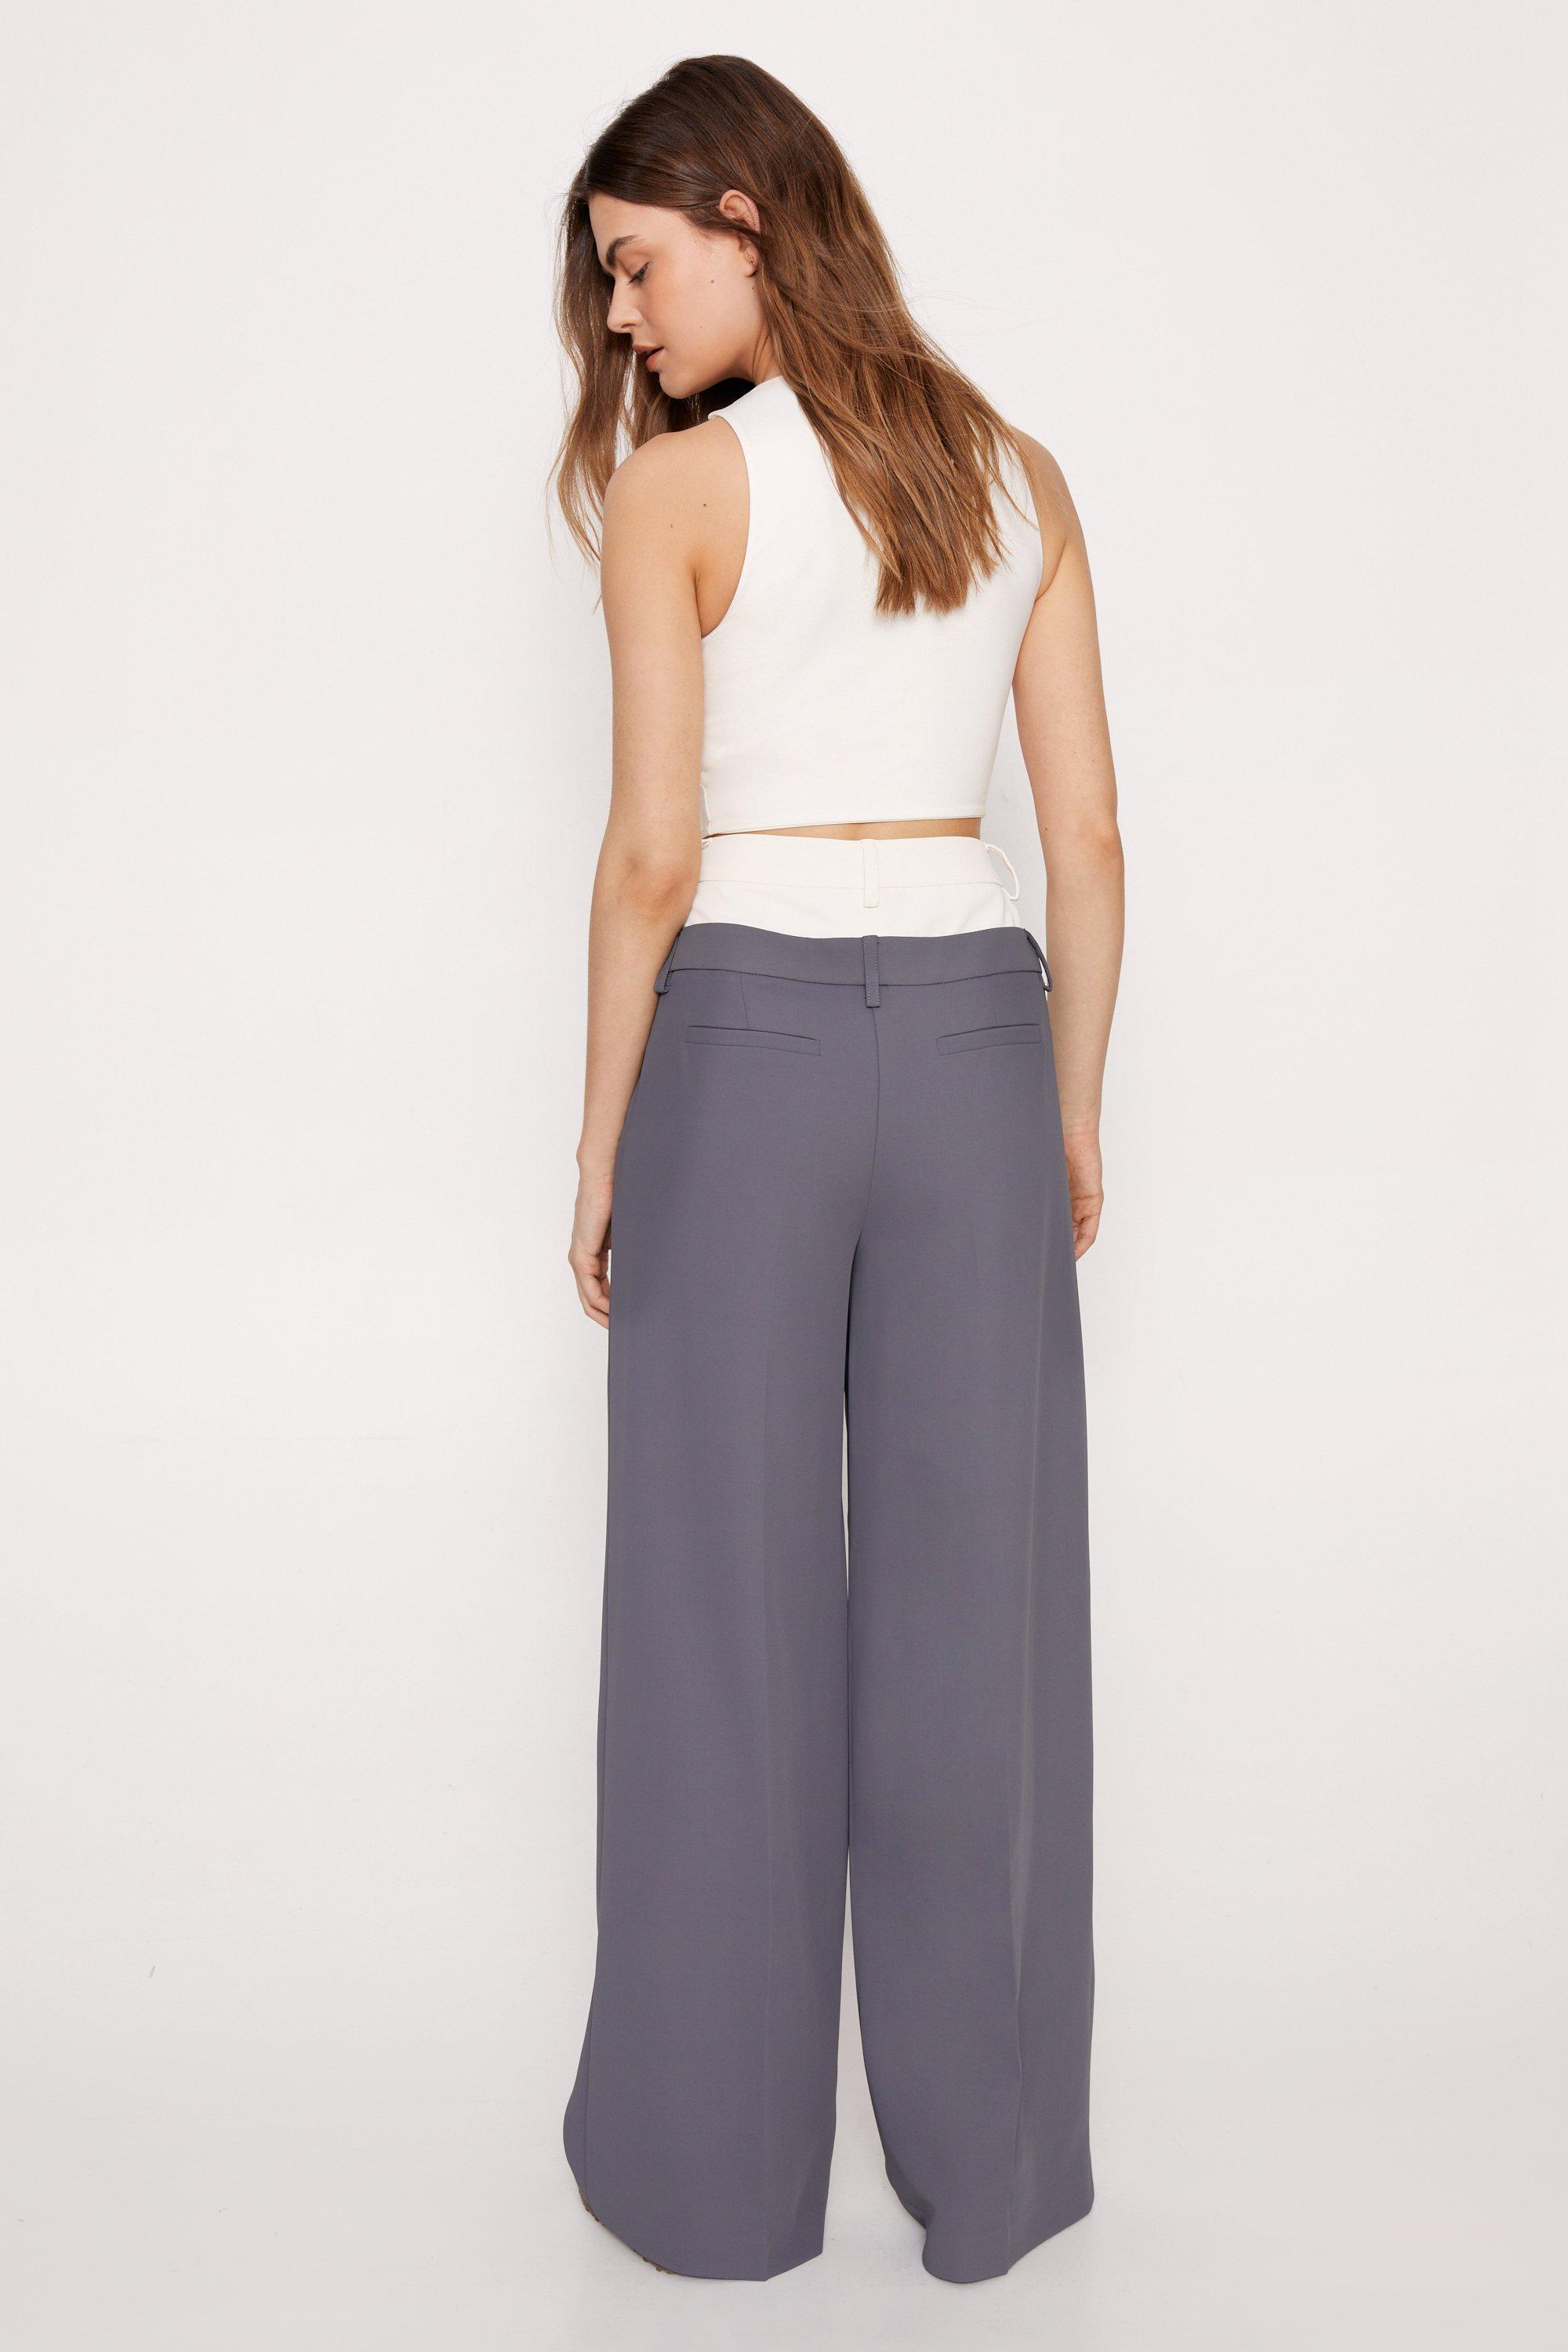 Body shaper trousers 699/= Waist size - La BELLE fashions